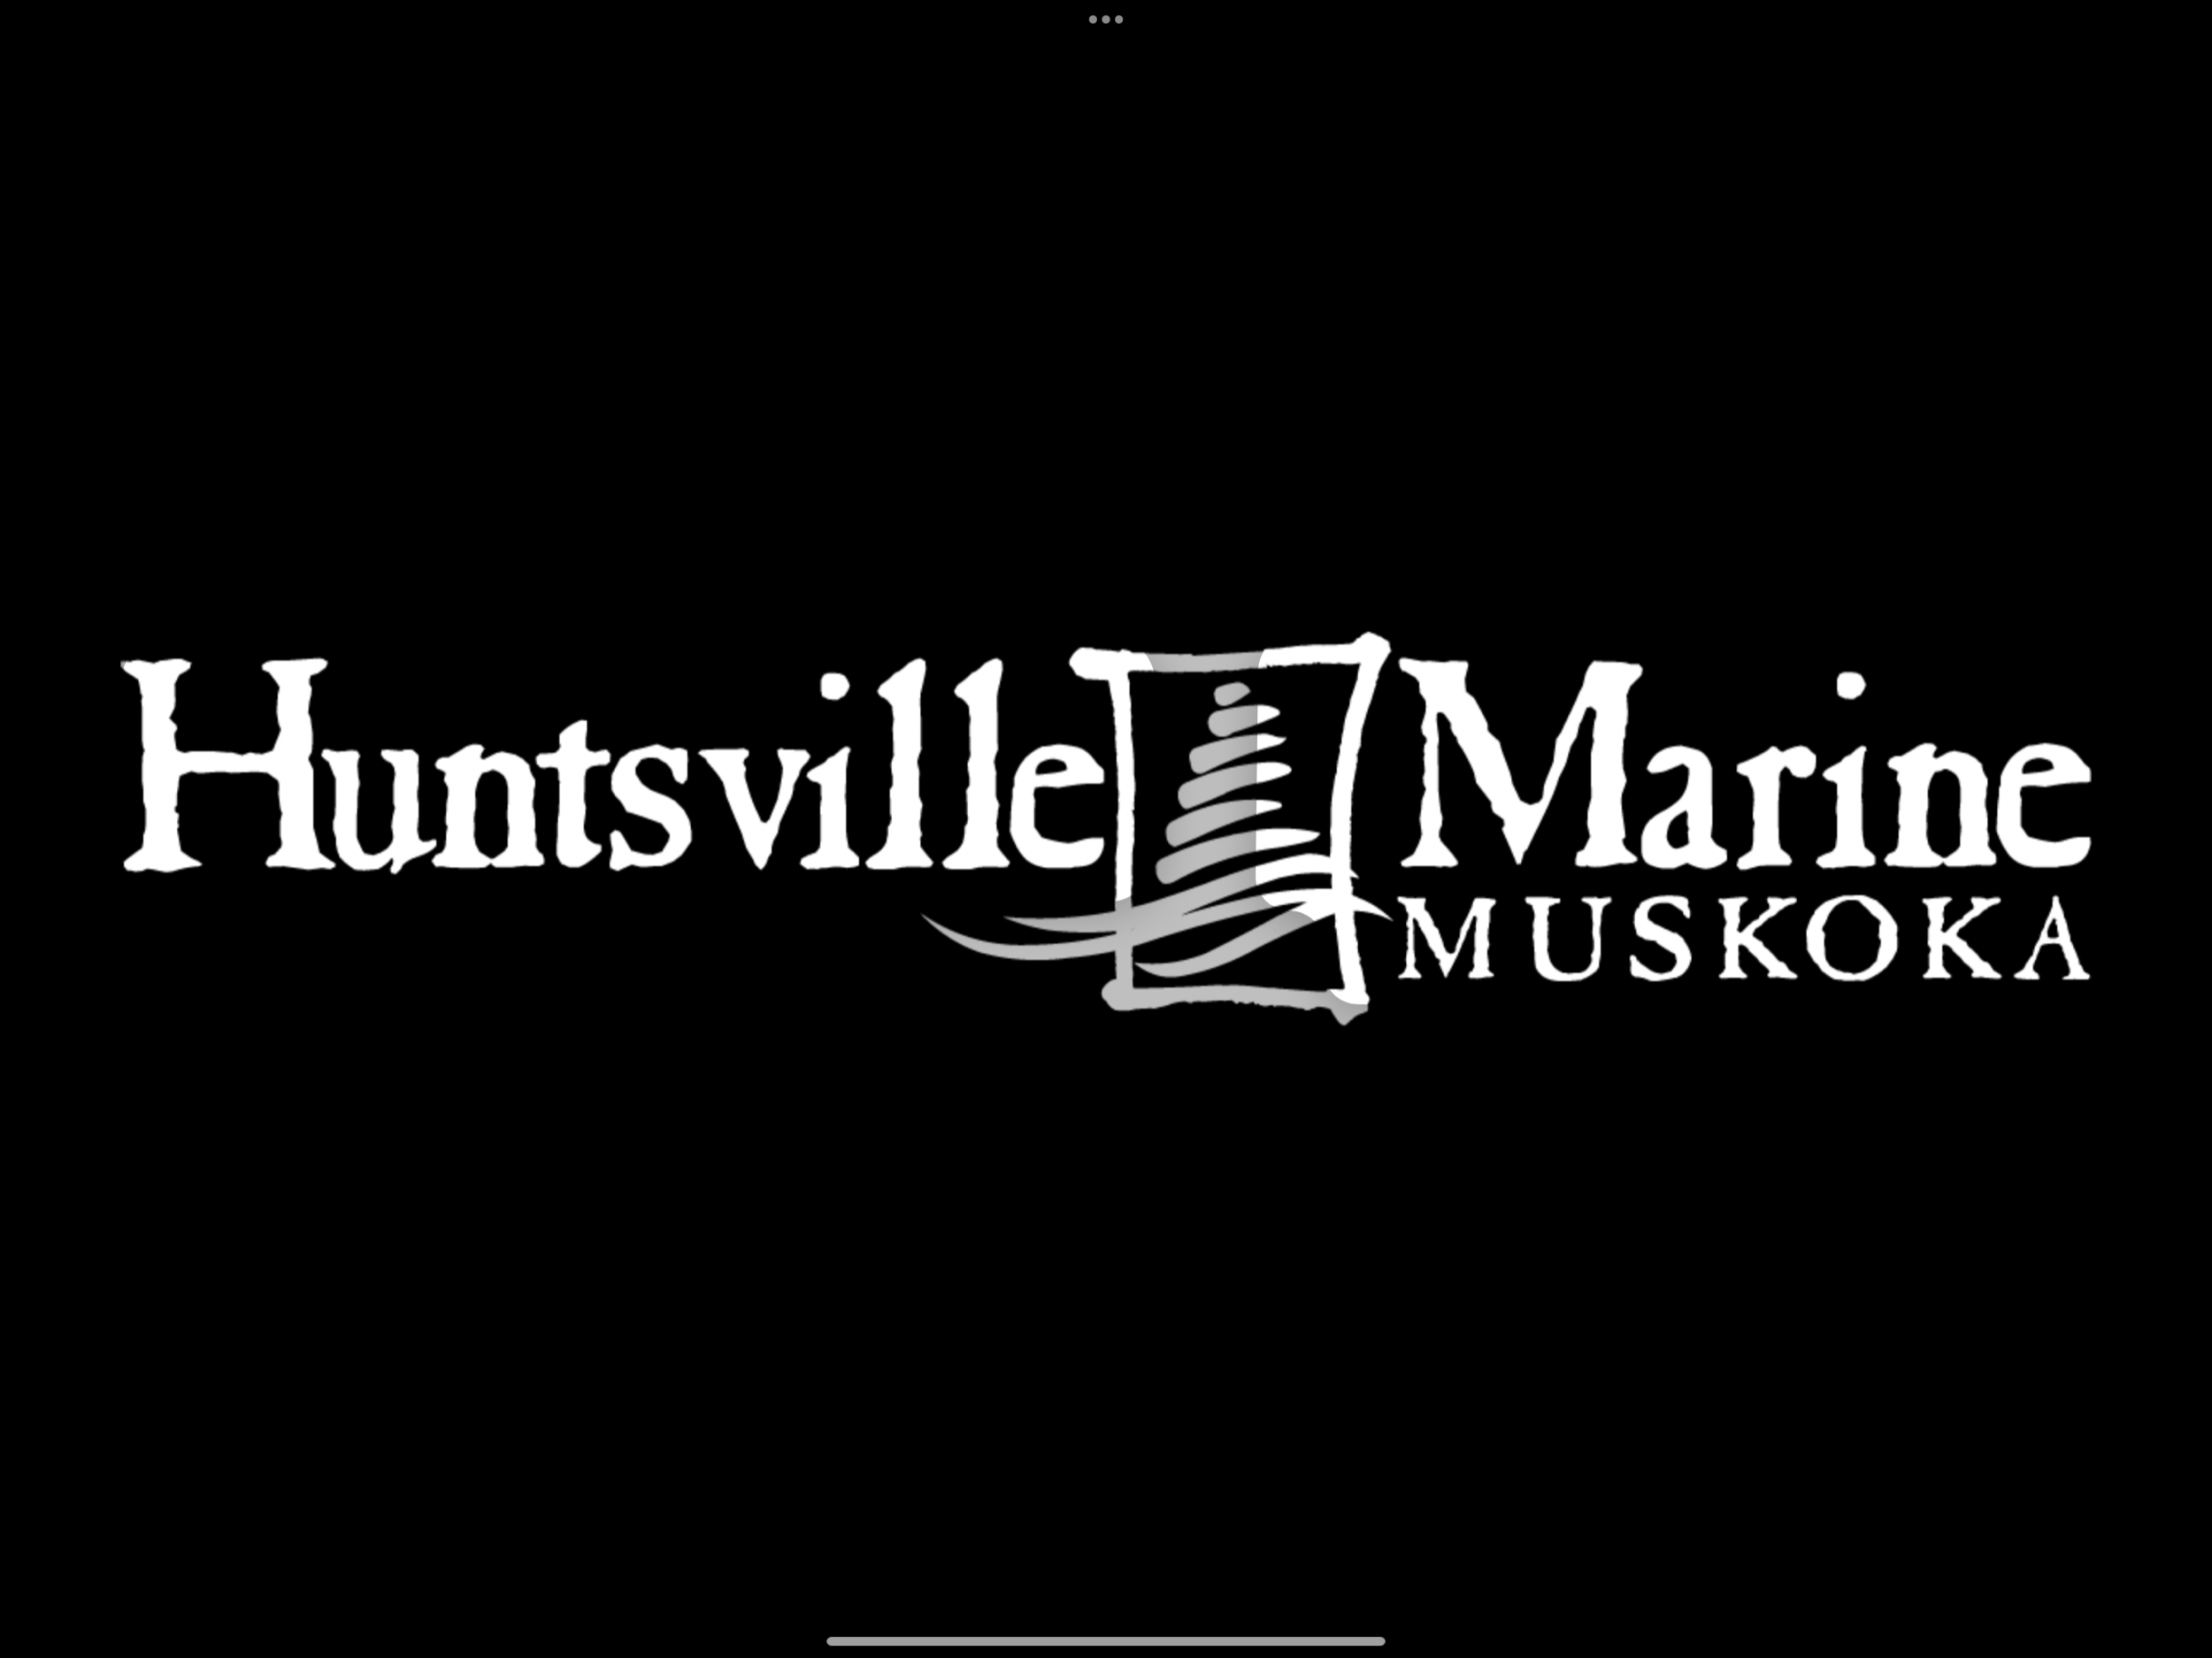 Huntsville Marine